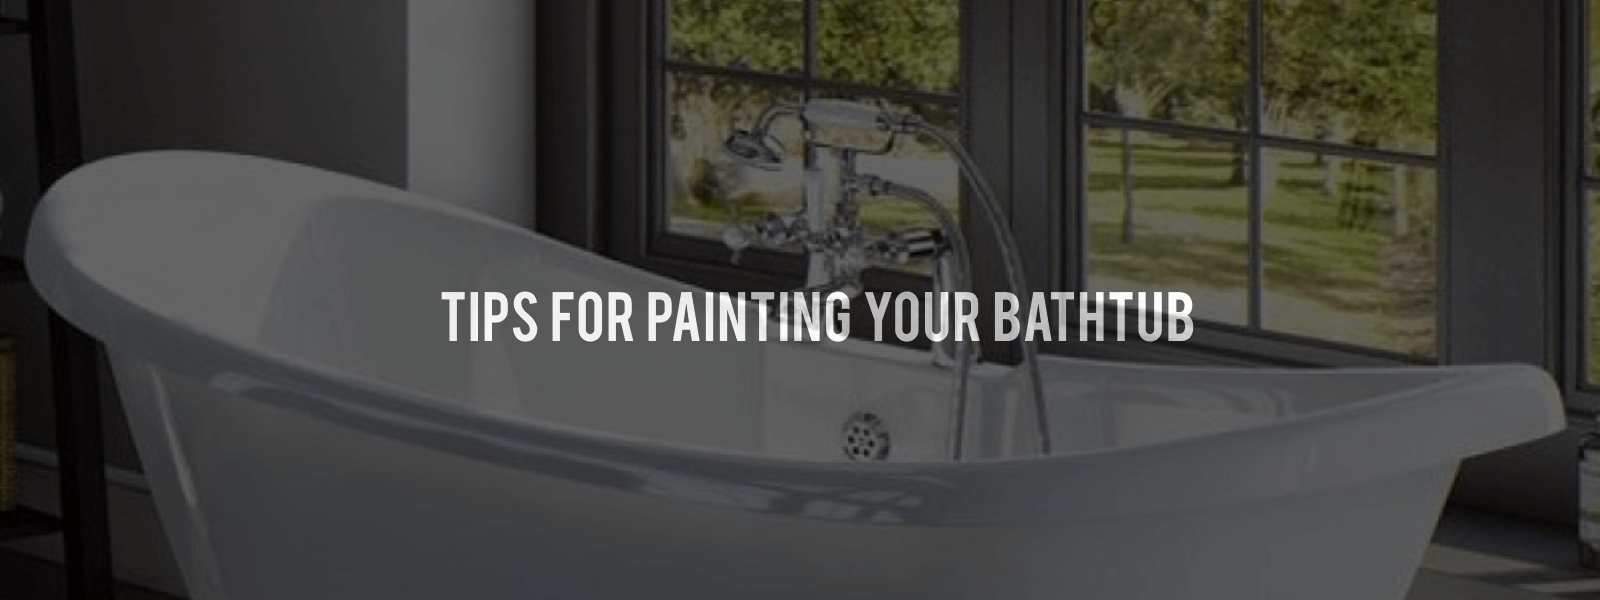 5 Tips For Painting Your Bathtub Baths, Can You Use Regular Spray Paint On Bathtub